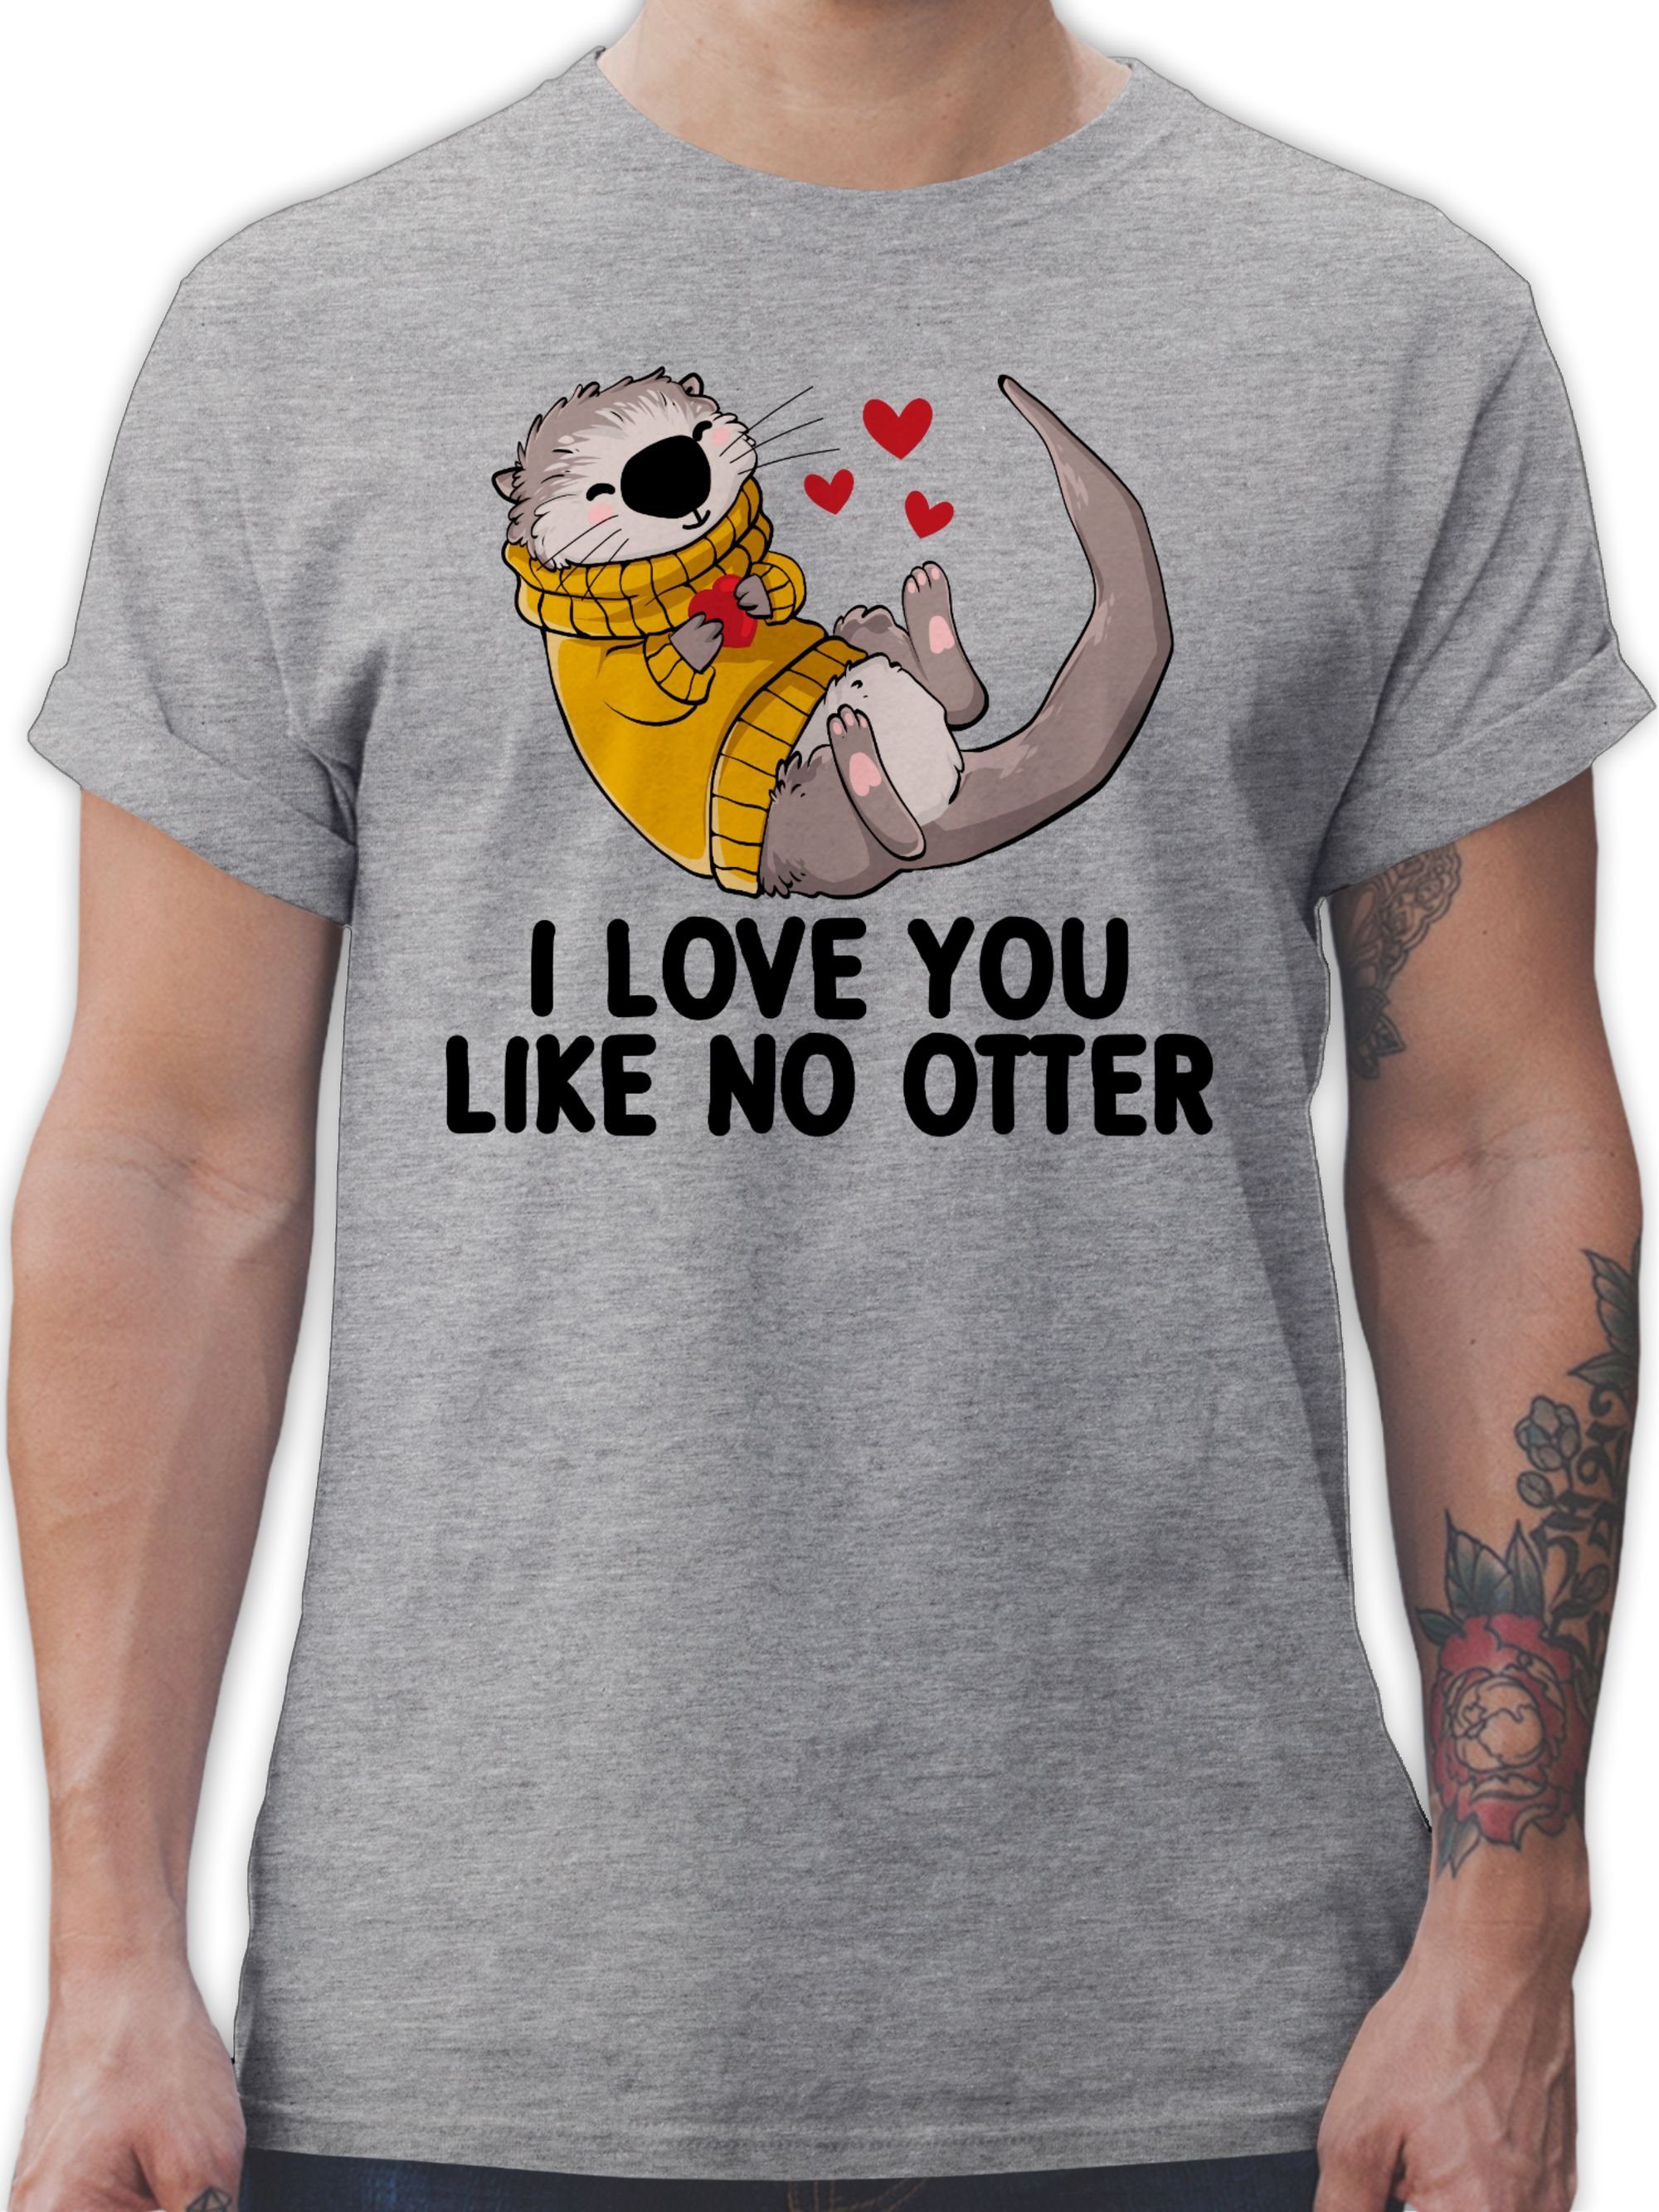 Shirtracer T-Shirt I like love OTTER Grau Partner Liebe 2 Geschenkidee Geschenk Valentinstag meliert no I you